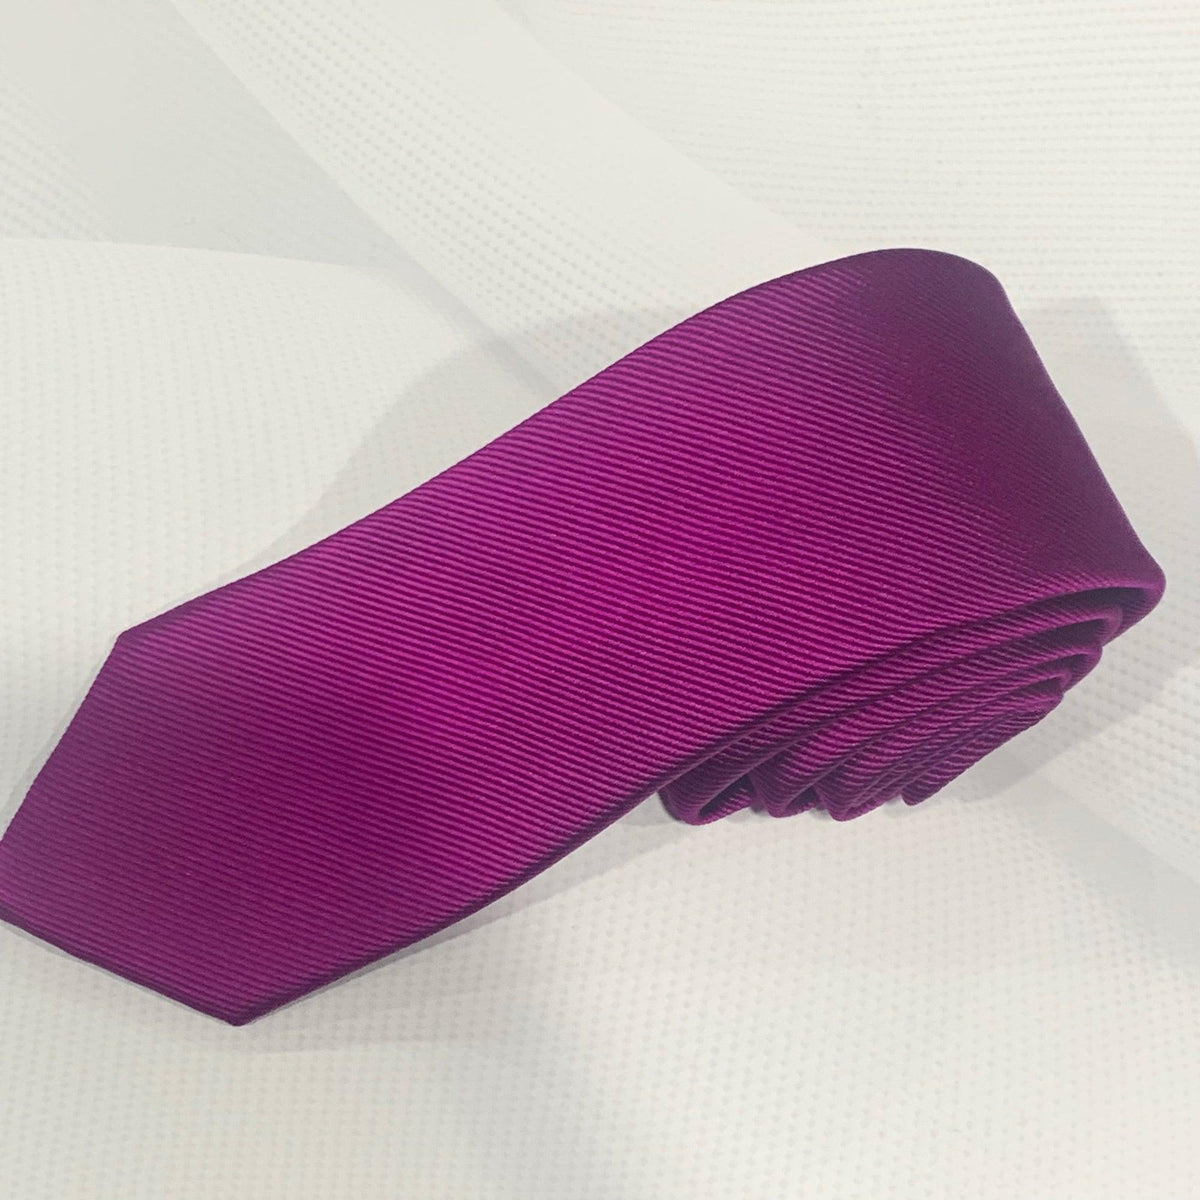 X18395-7 Silk Tie - Harrys for Menswear